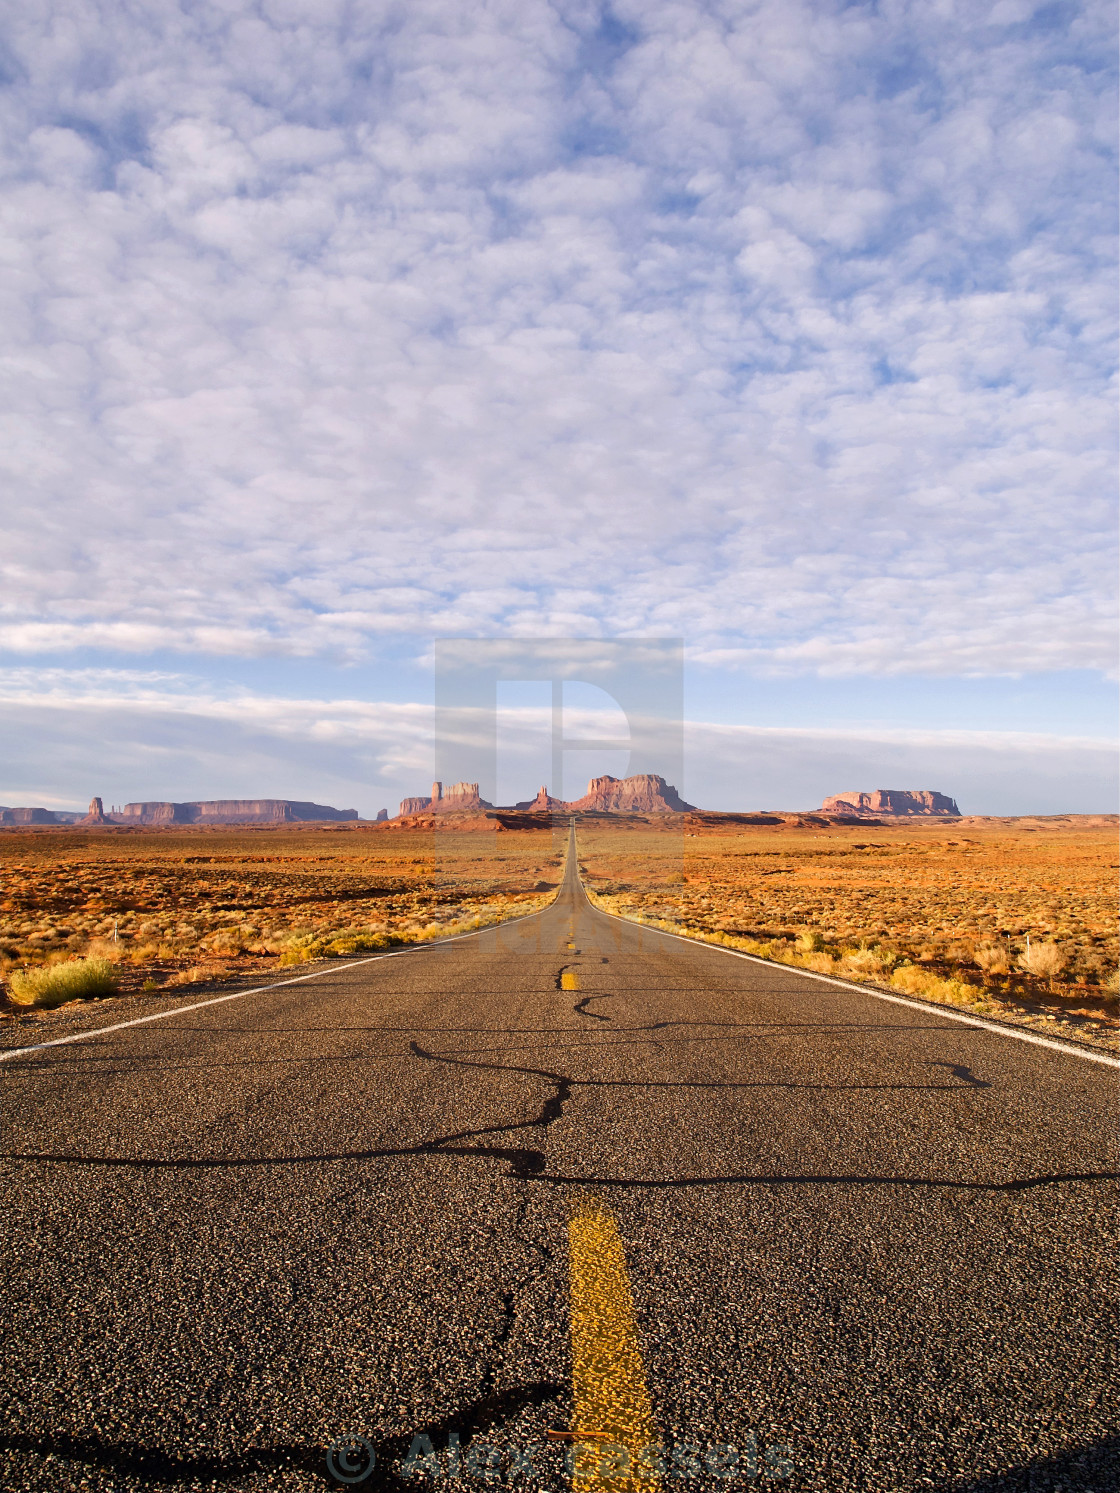 "Desert Highway" stock image